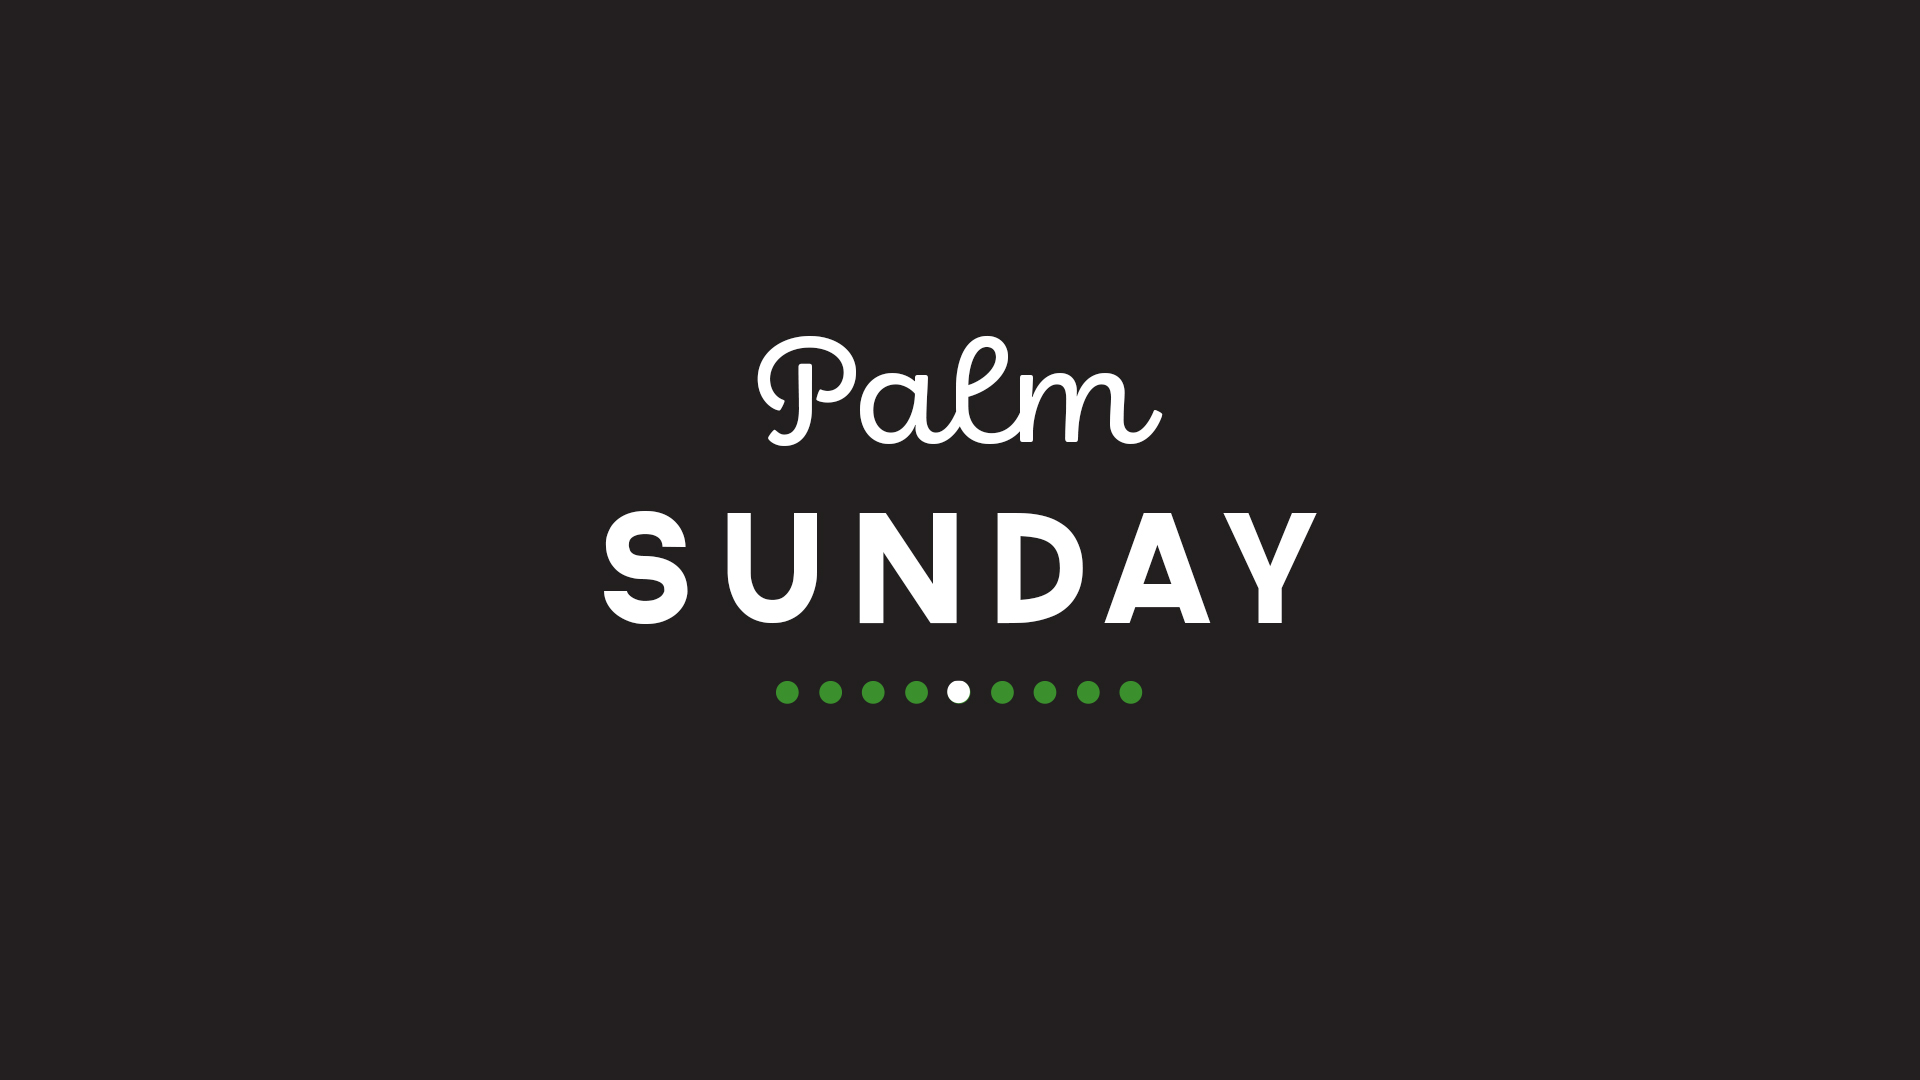 Palm Sunday 2020